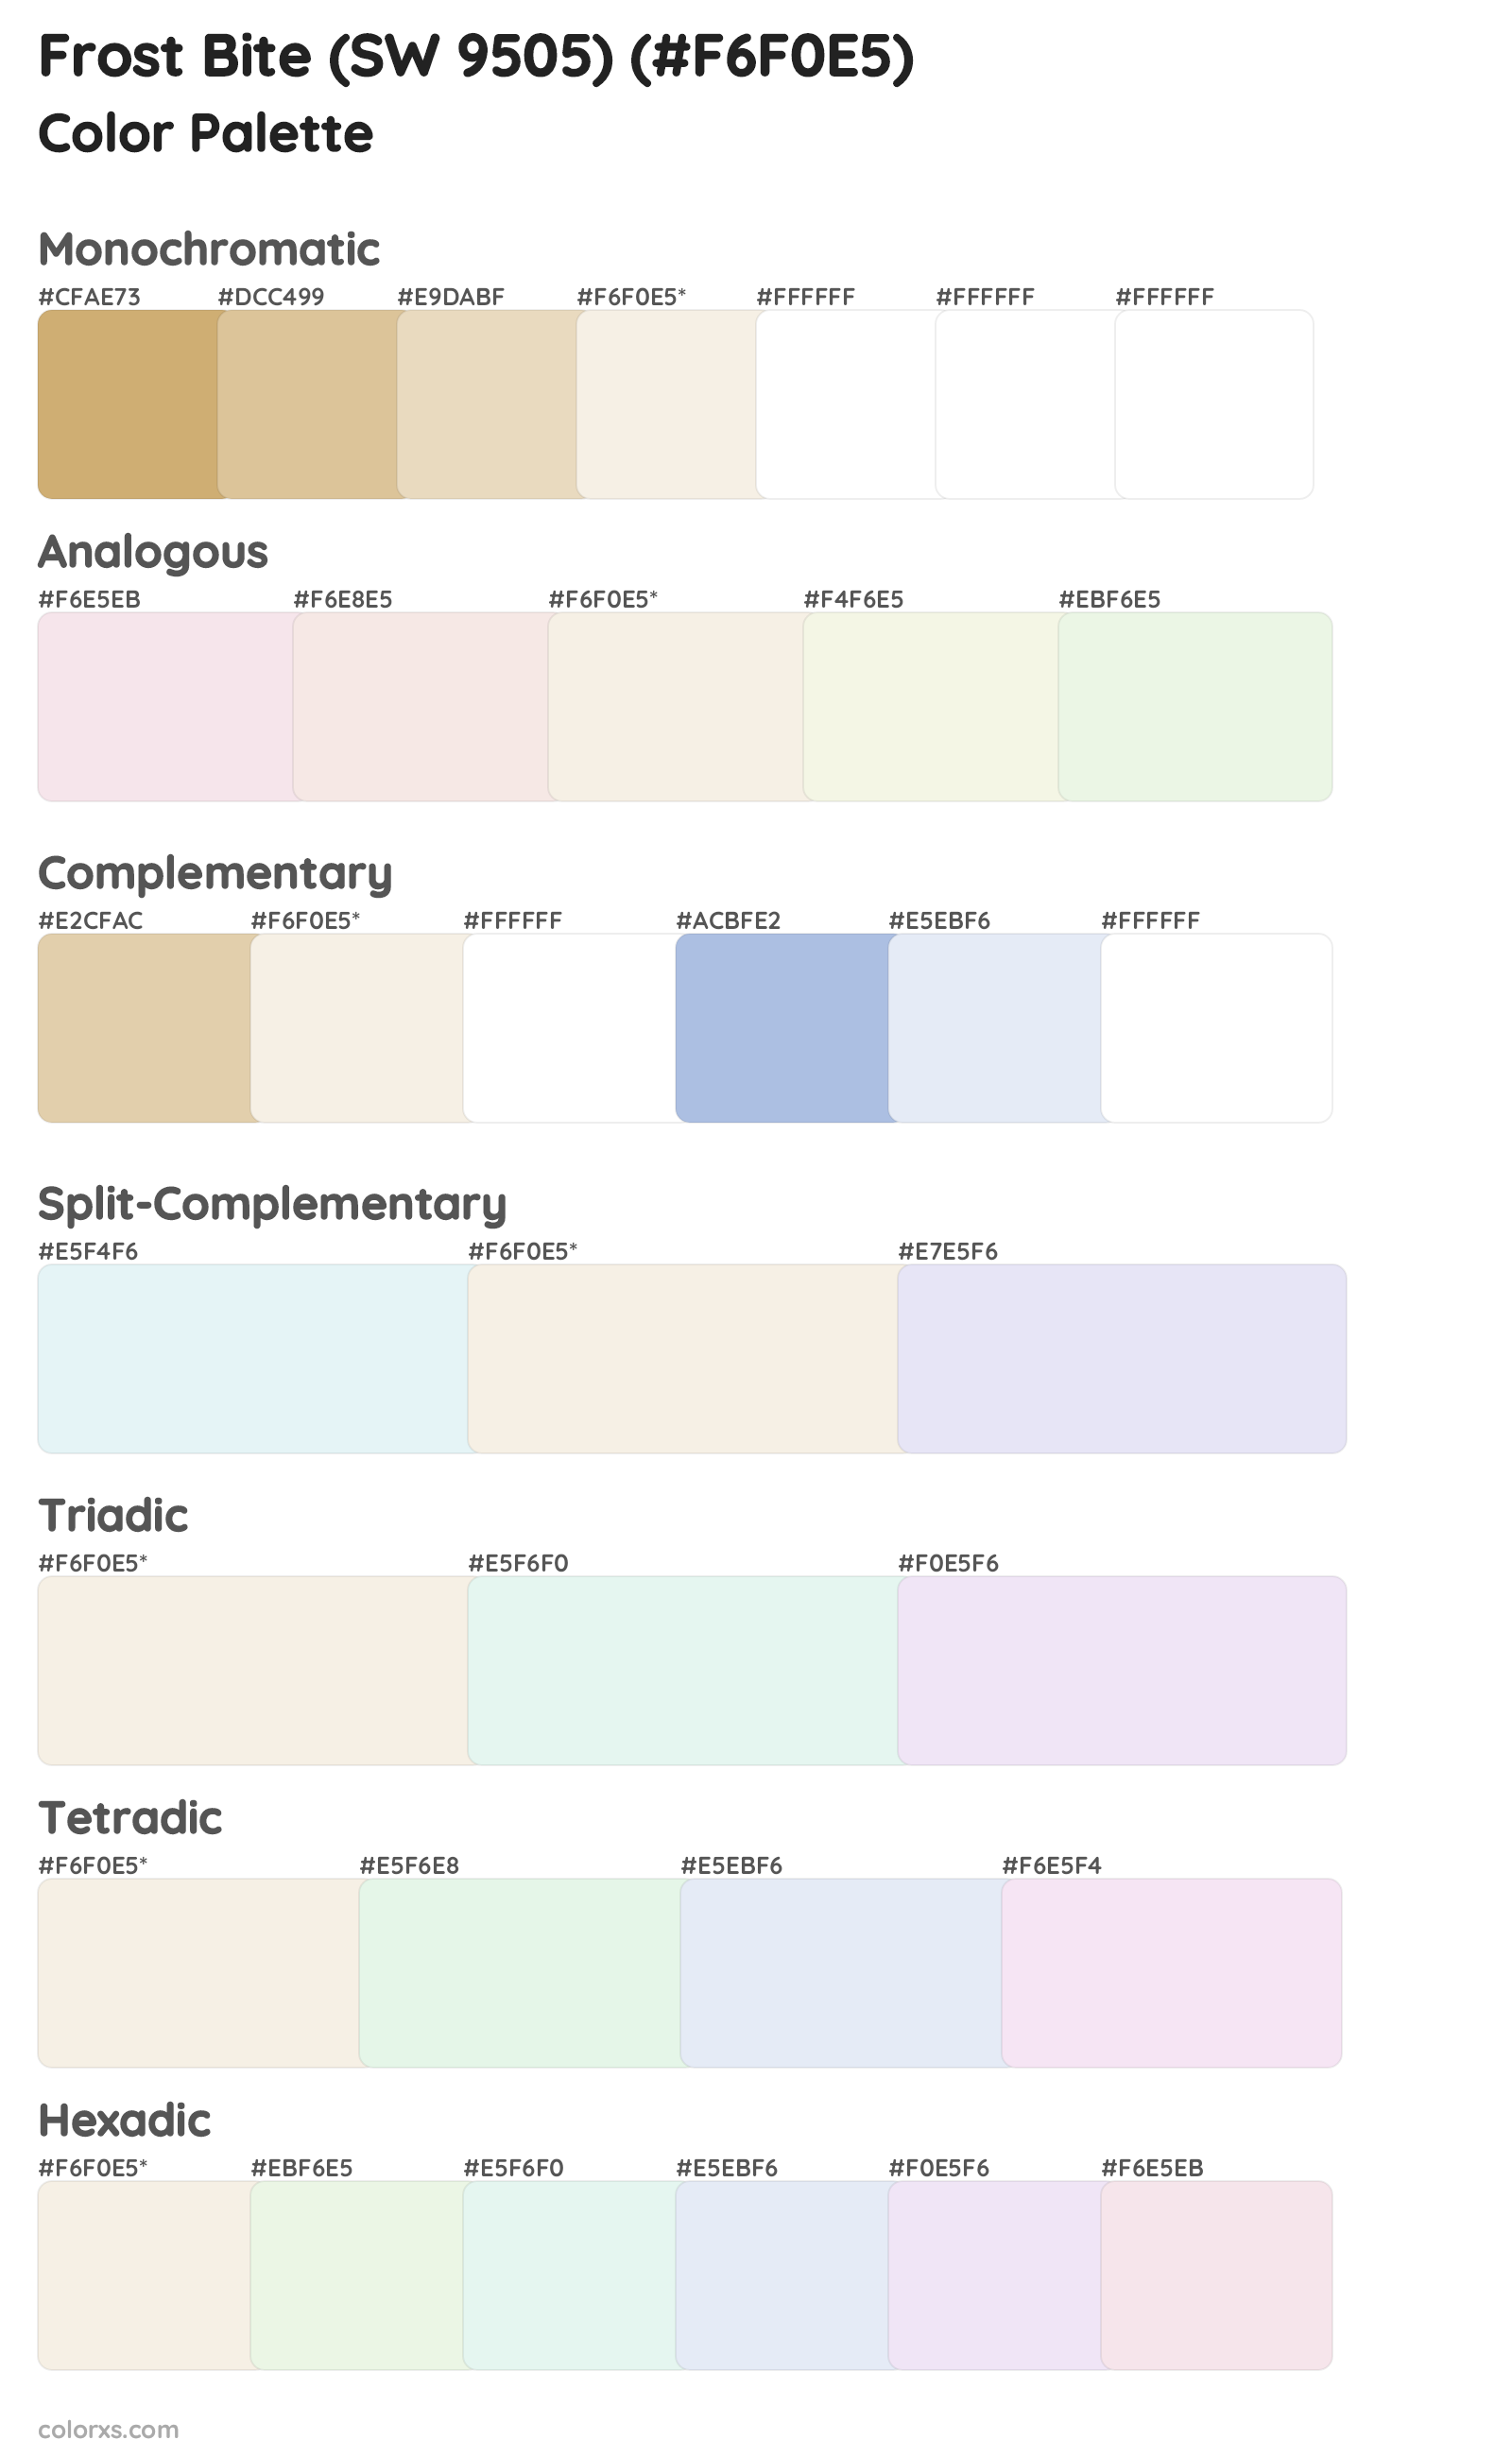 Frost Bite (SW 9505) Color Scheme Palettes